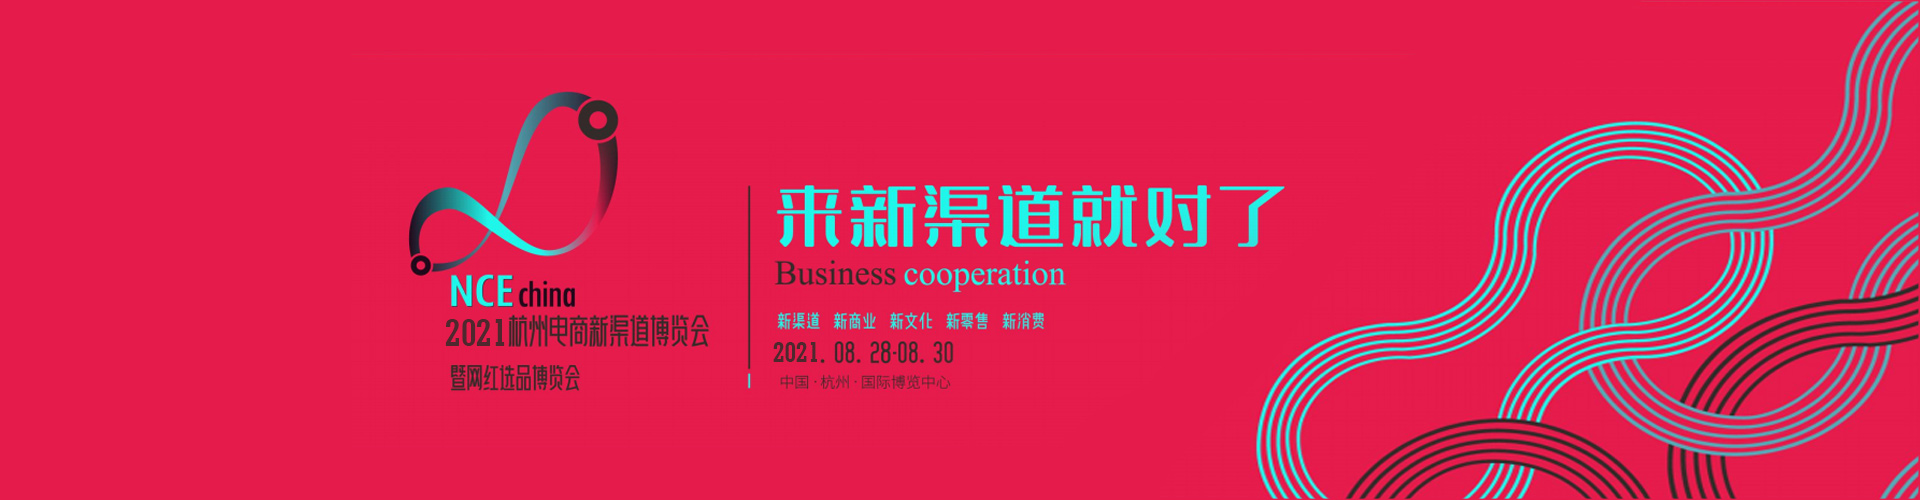 杭州网红直播展展商名单